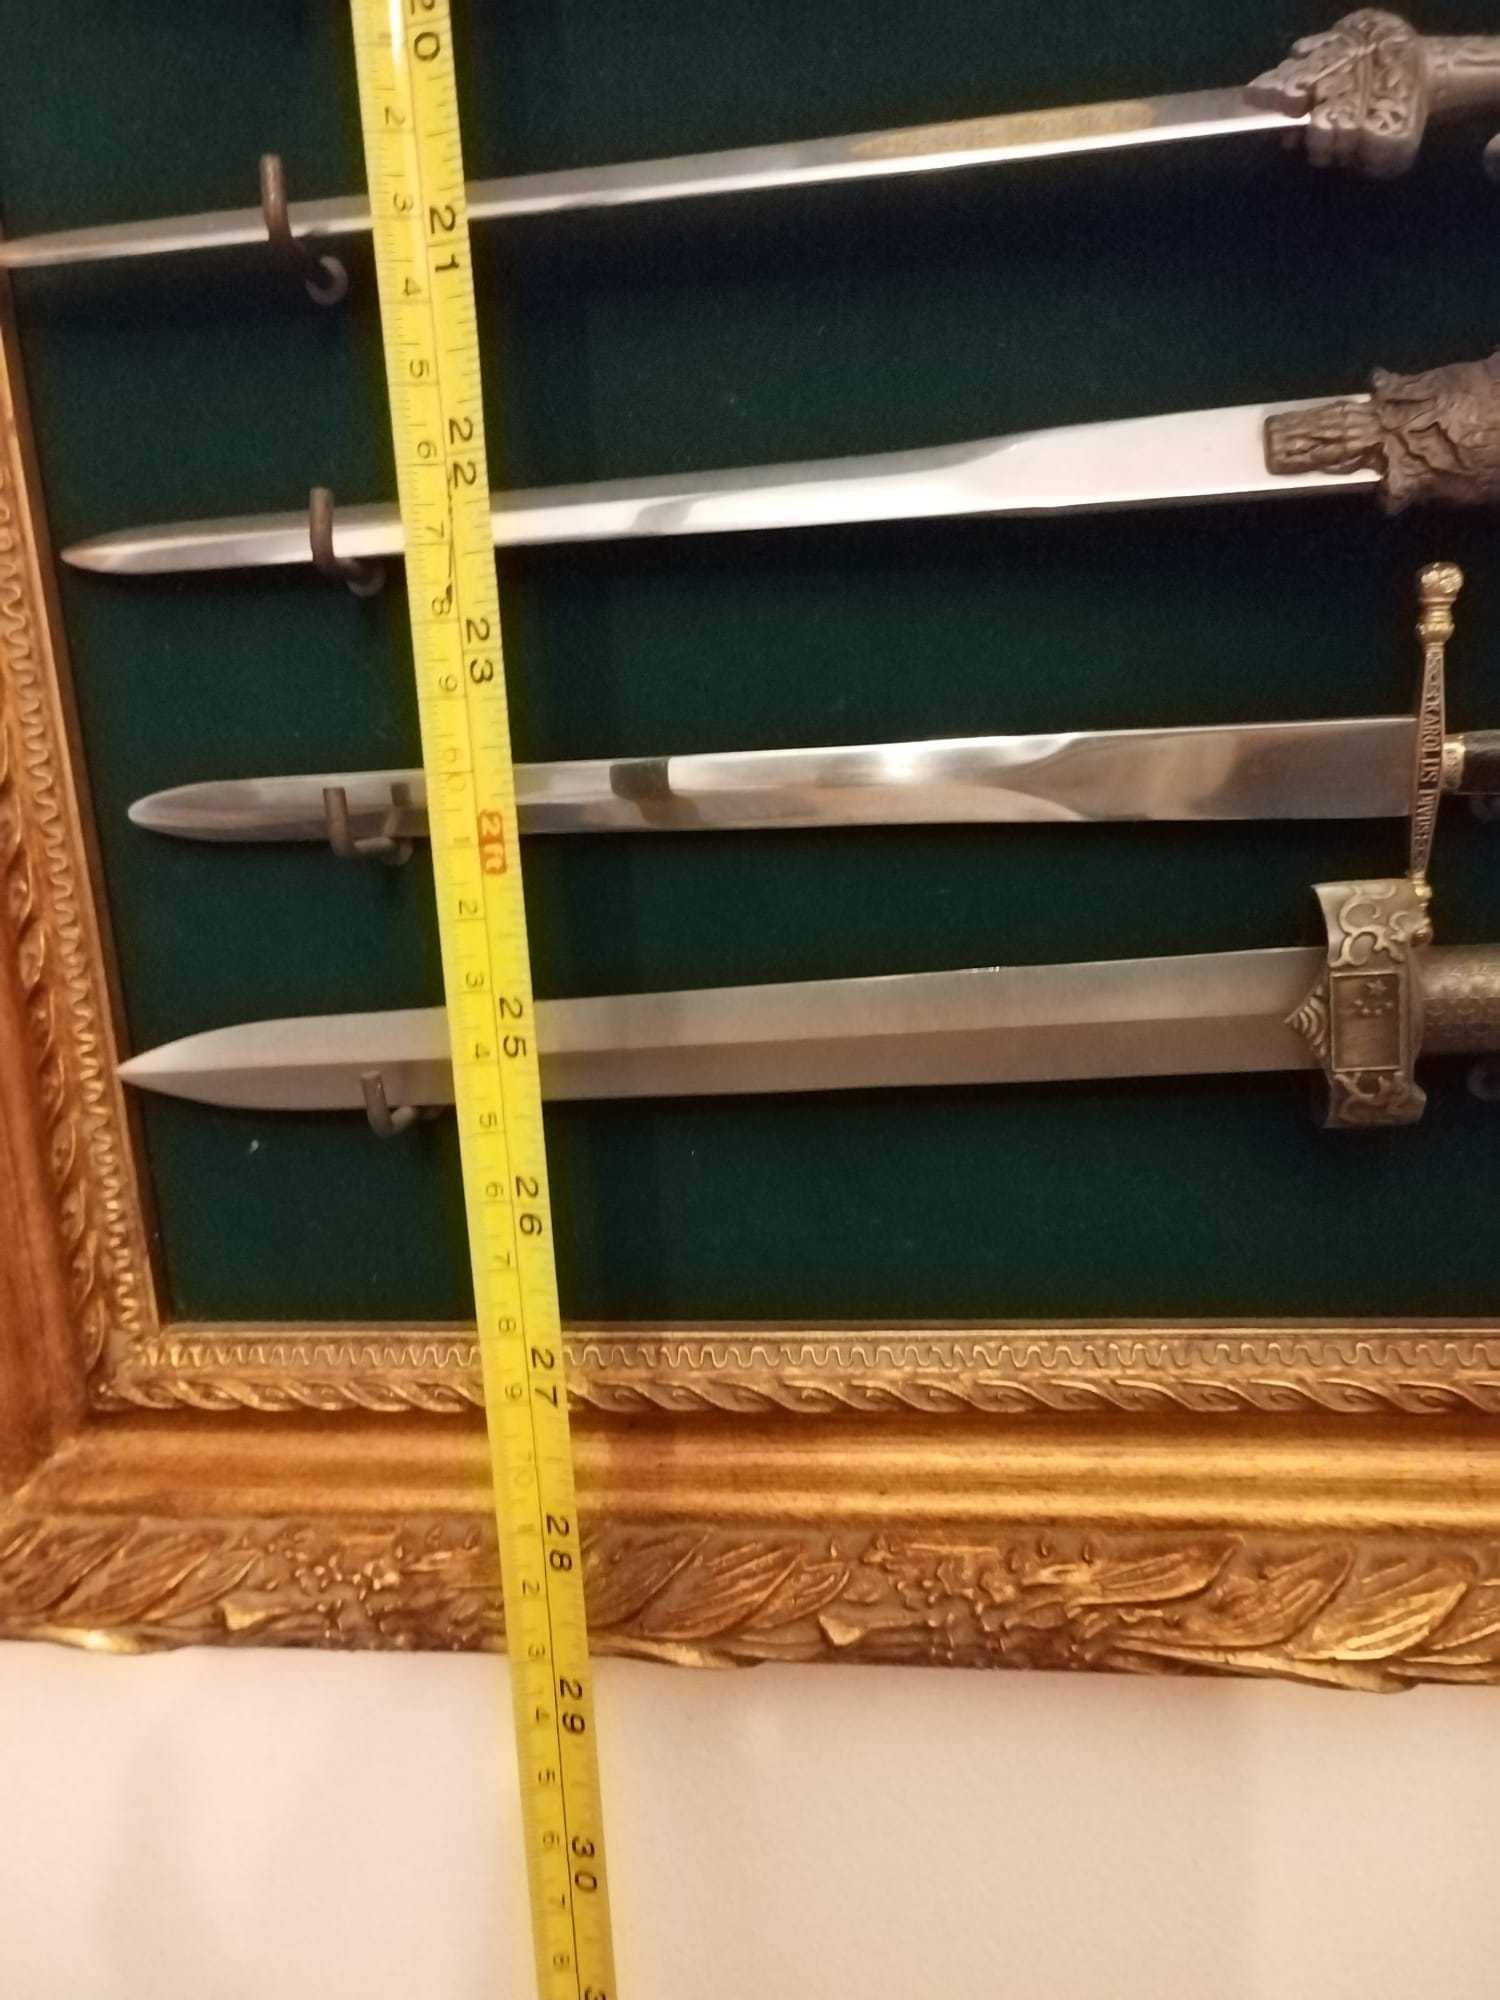 Coleção de réplicas de espadas expostas em moldura - bem executado